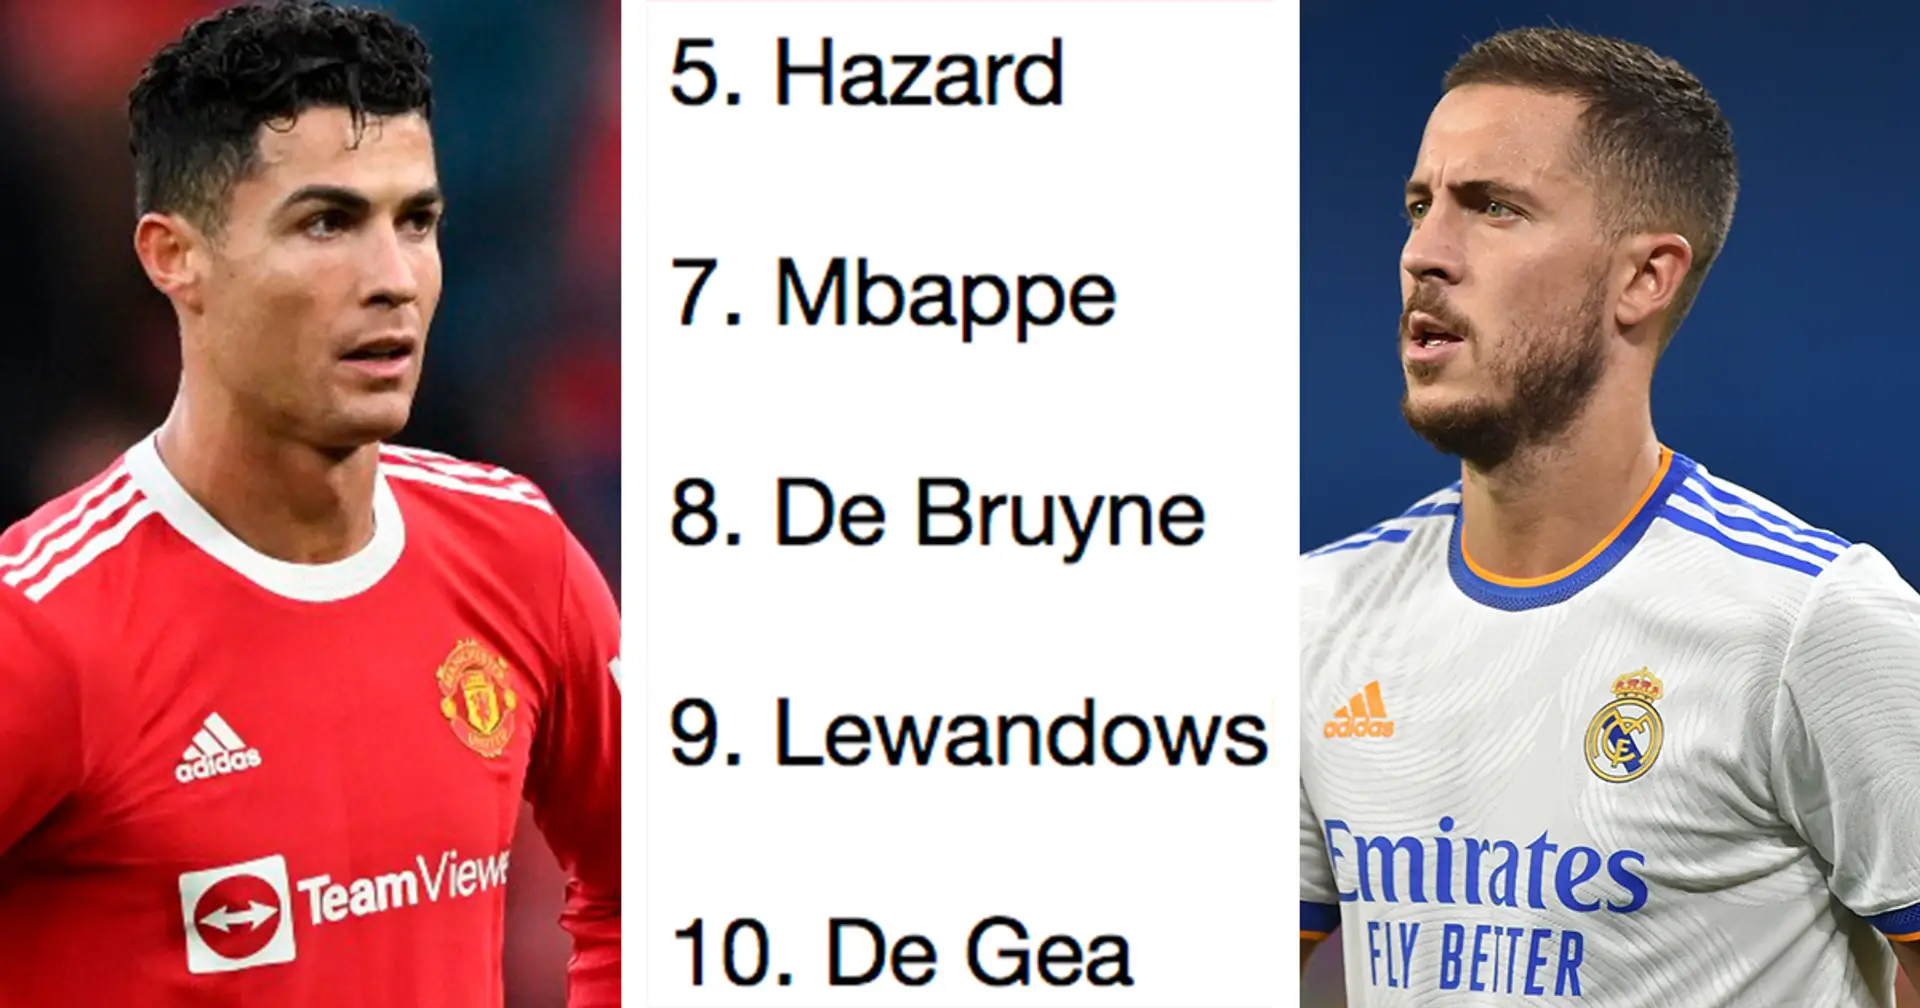 2 estrellas del Real Madrid en la lista de los 10 jugadores mejor pagados de Europa, Cristiano tercero